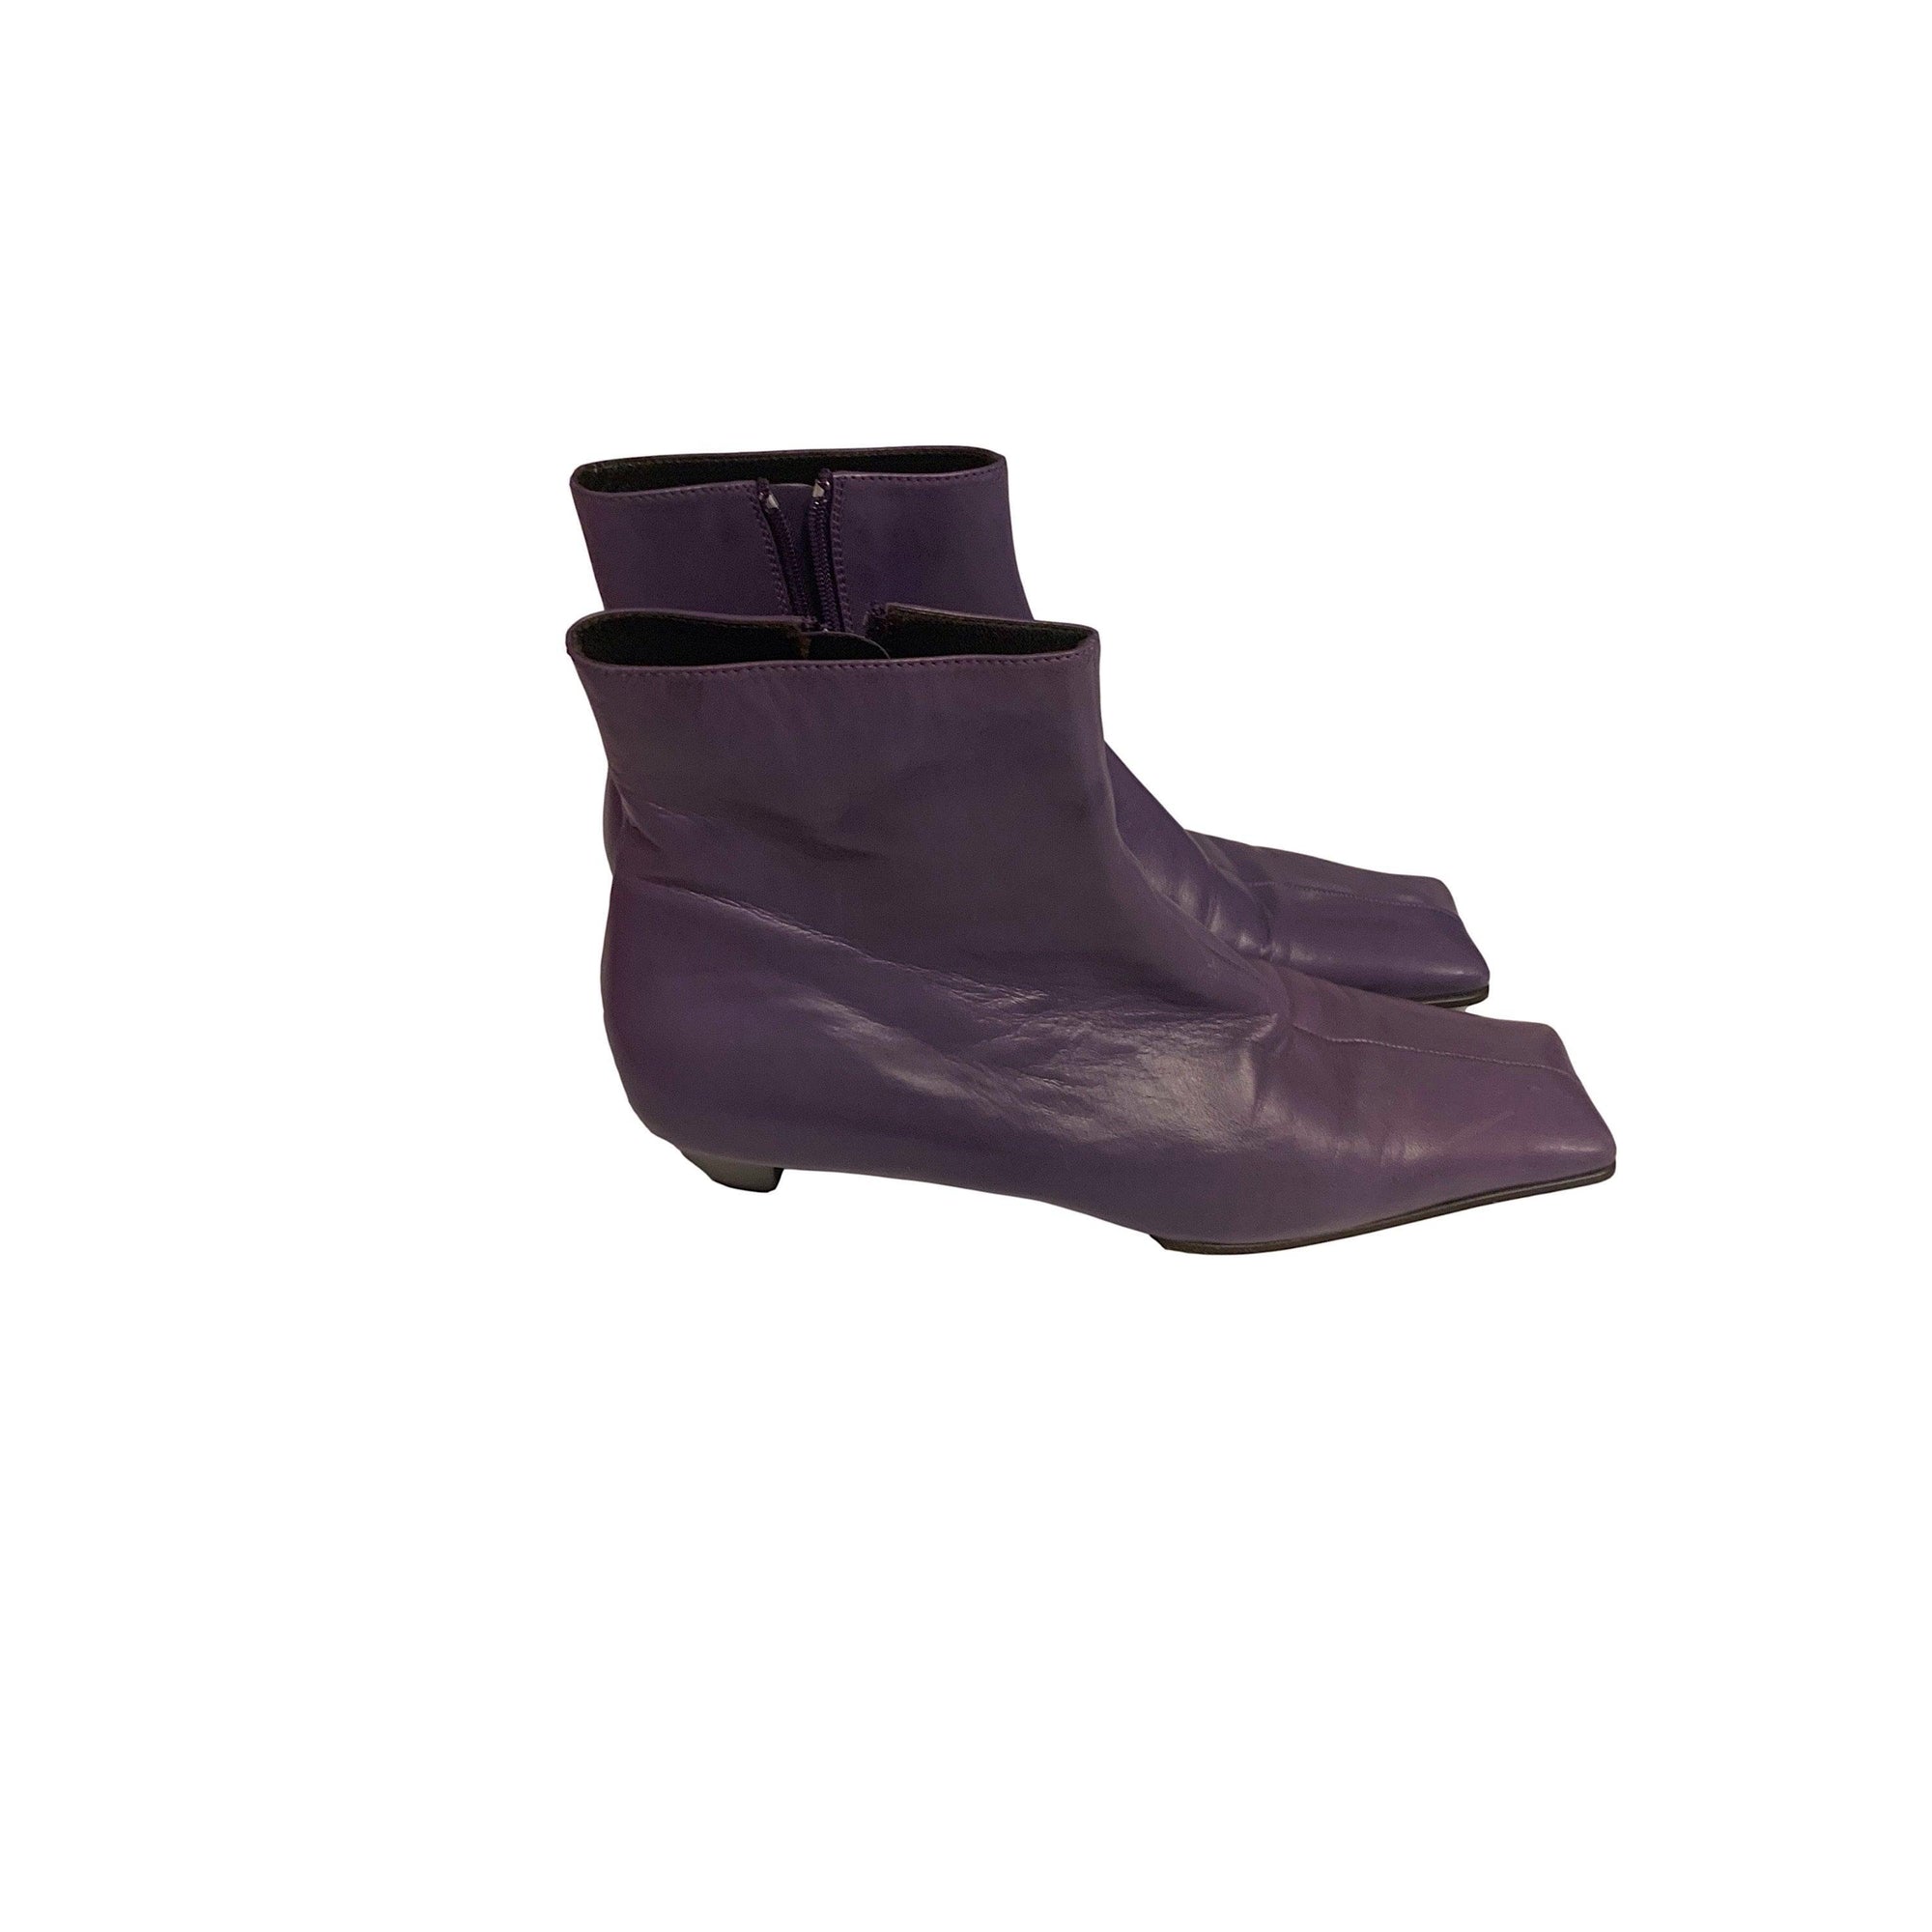 Miu Miu Purple Square Toe Ankle Boots - Shoes